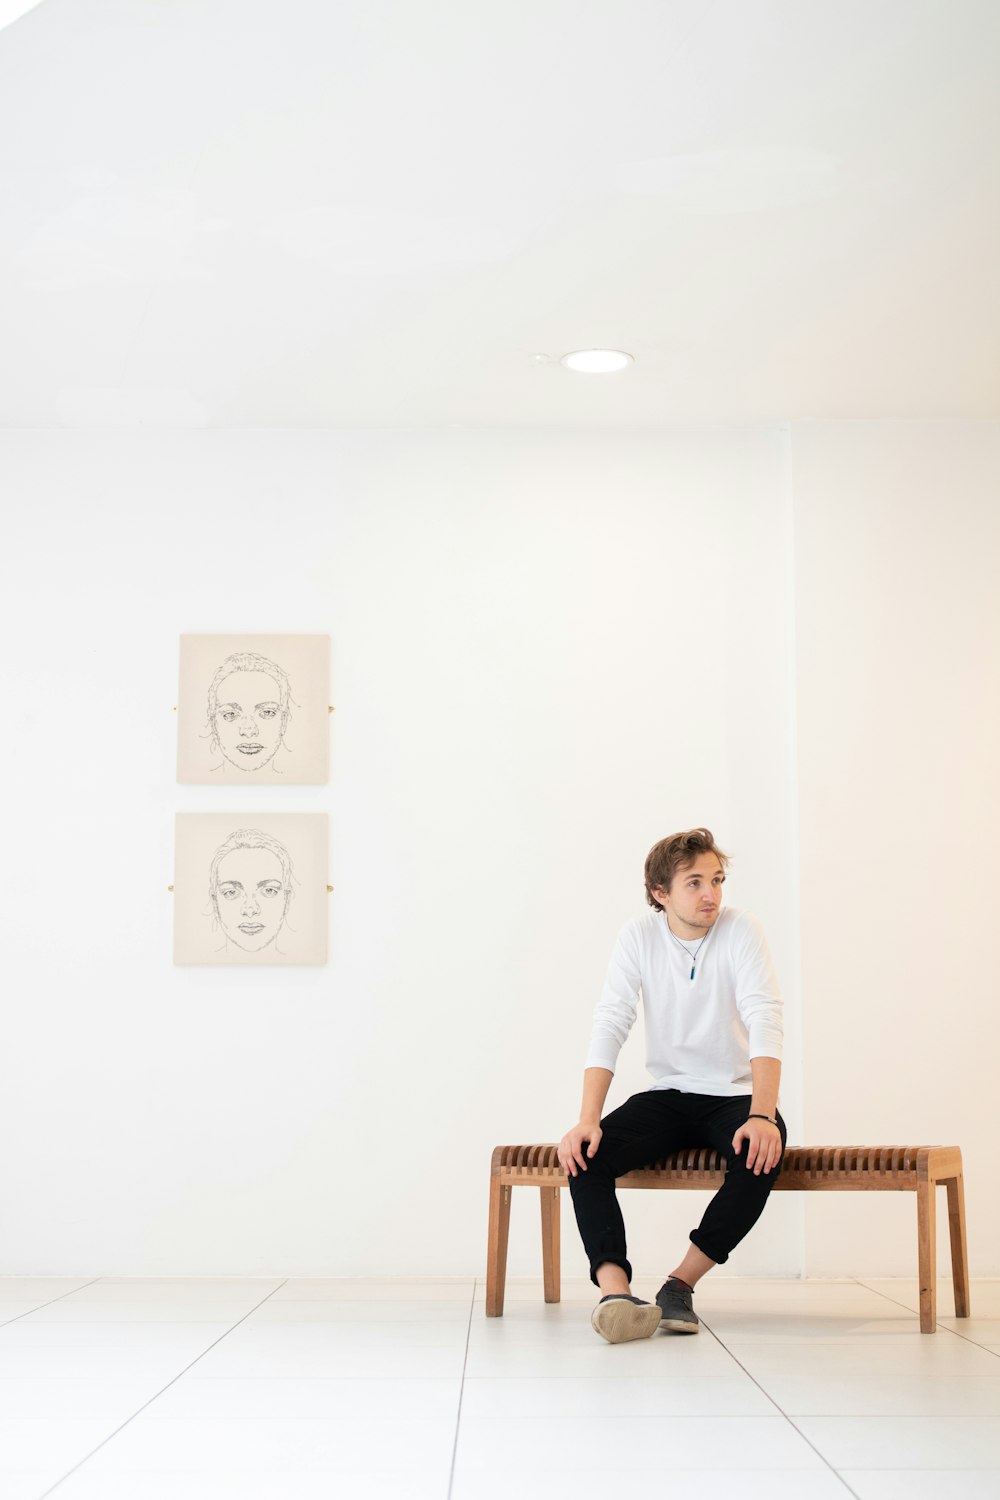 Mann im weißen Hemd sitzt auf Bank neben Porträts